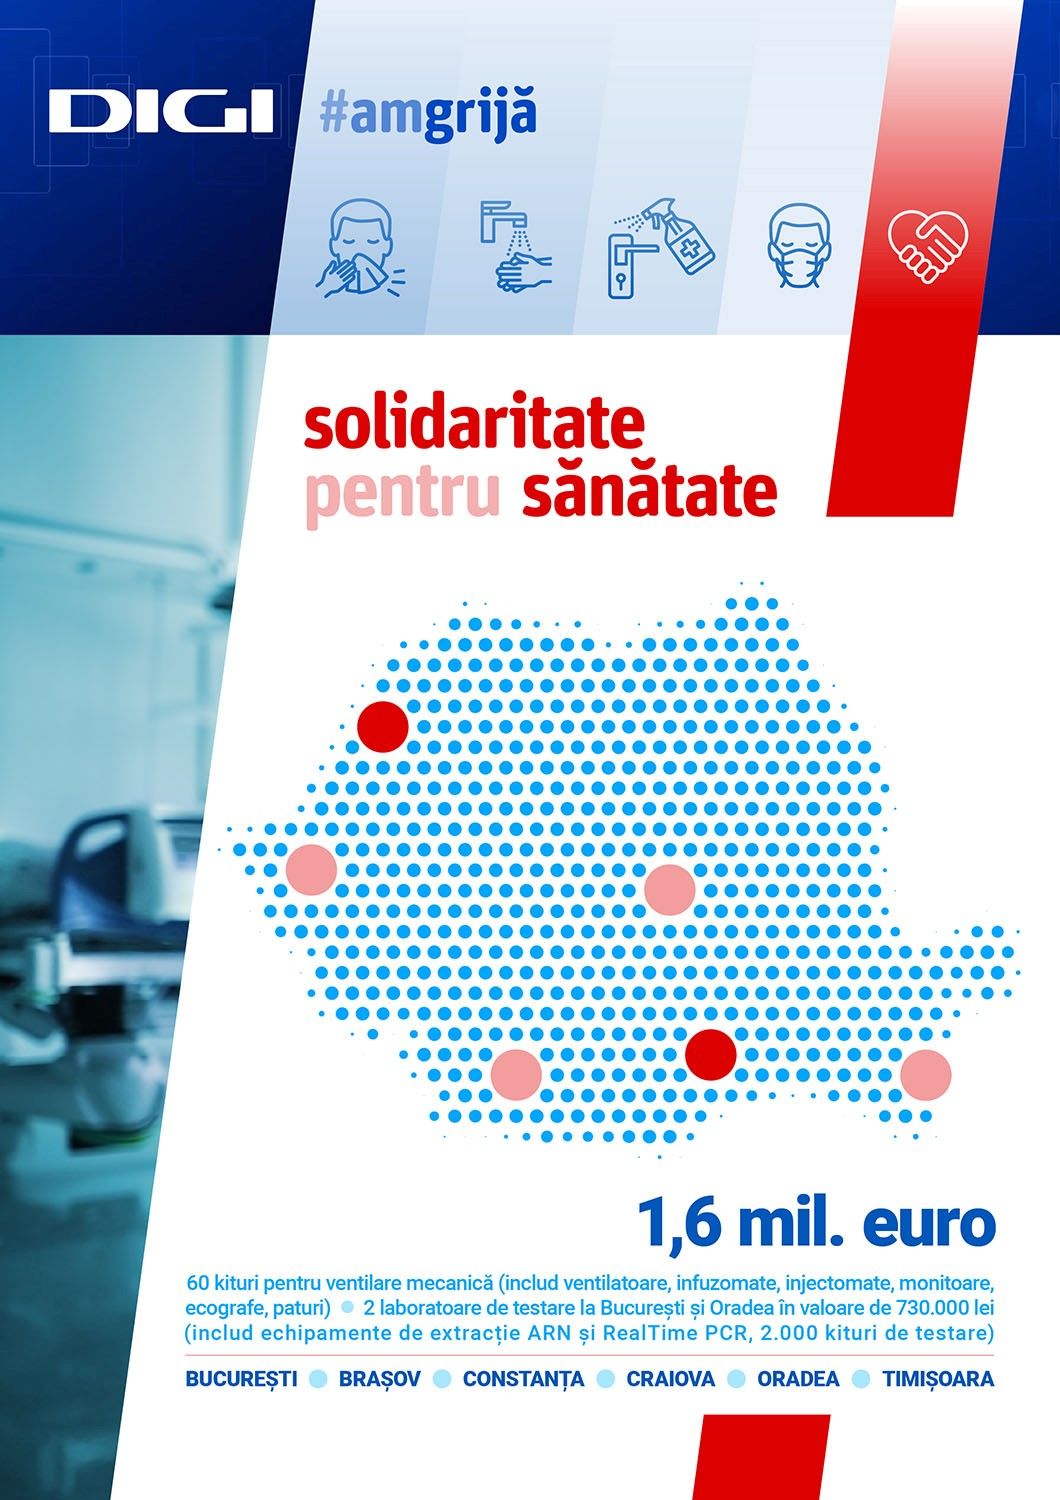 #VeștiBune: Grupul Digi donează echipamente medicale de peste 1,6 milioane de euro